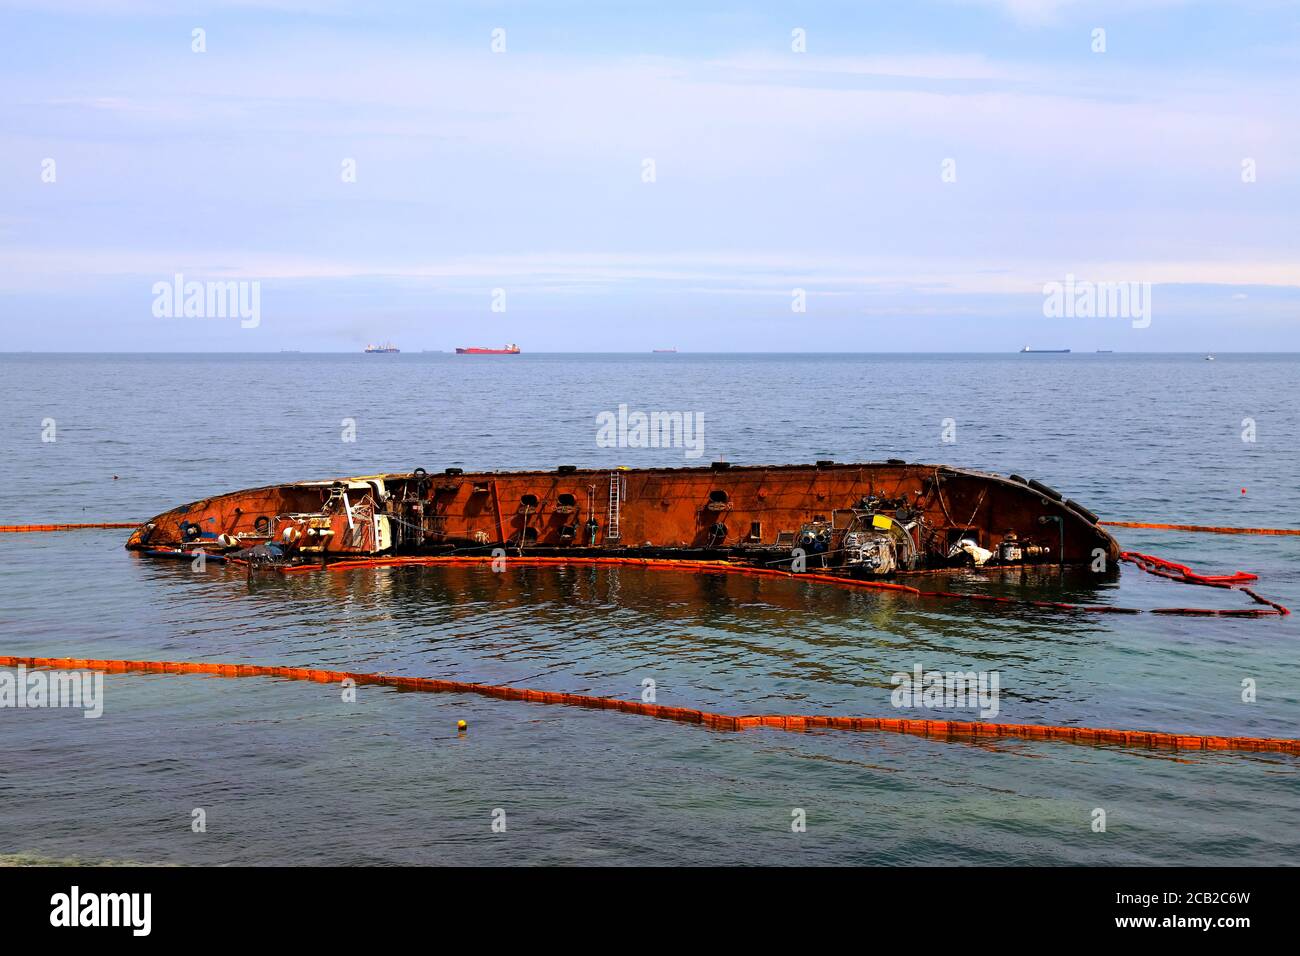 Una vecchia petroliera arrugginita si è allagata e si trova vicino alla costa di Odessa, Ucraina. Il petrolio fuoriesce dalla nave e inquina l'acqua di mare. Inquinamento ambientale Foto Stock